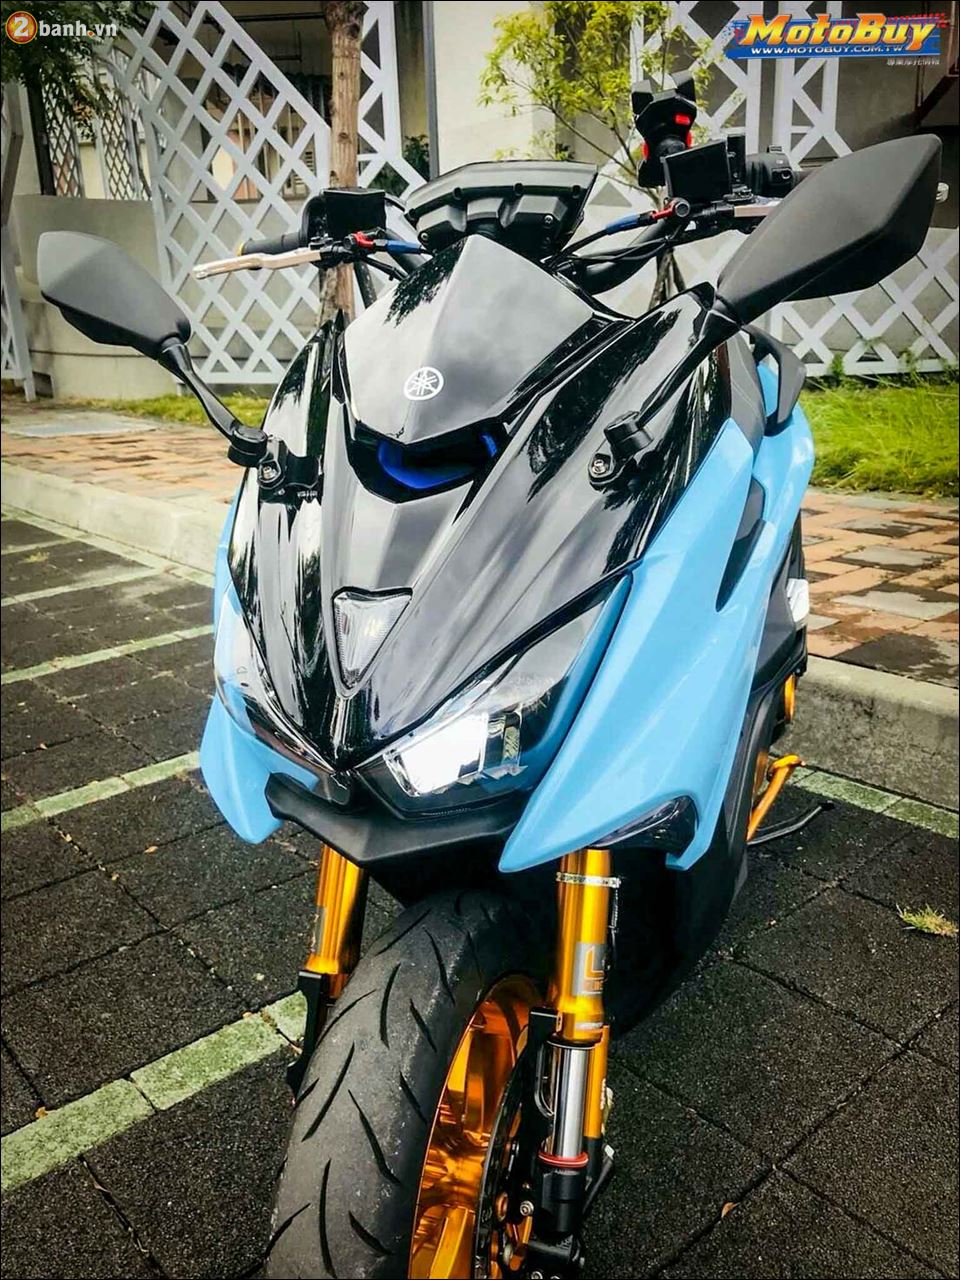 Yamaha Force 155 ban do Scooter dam chat choi tu Biker xu Dai - 3